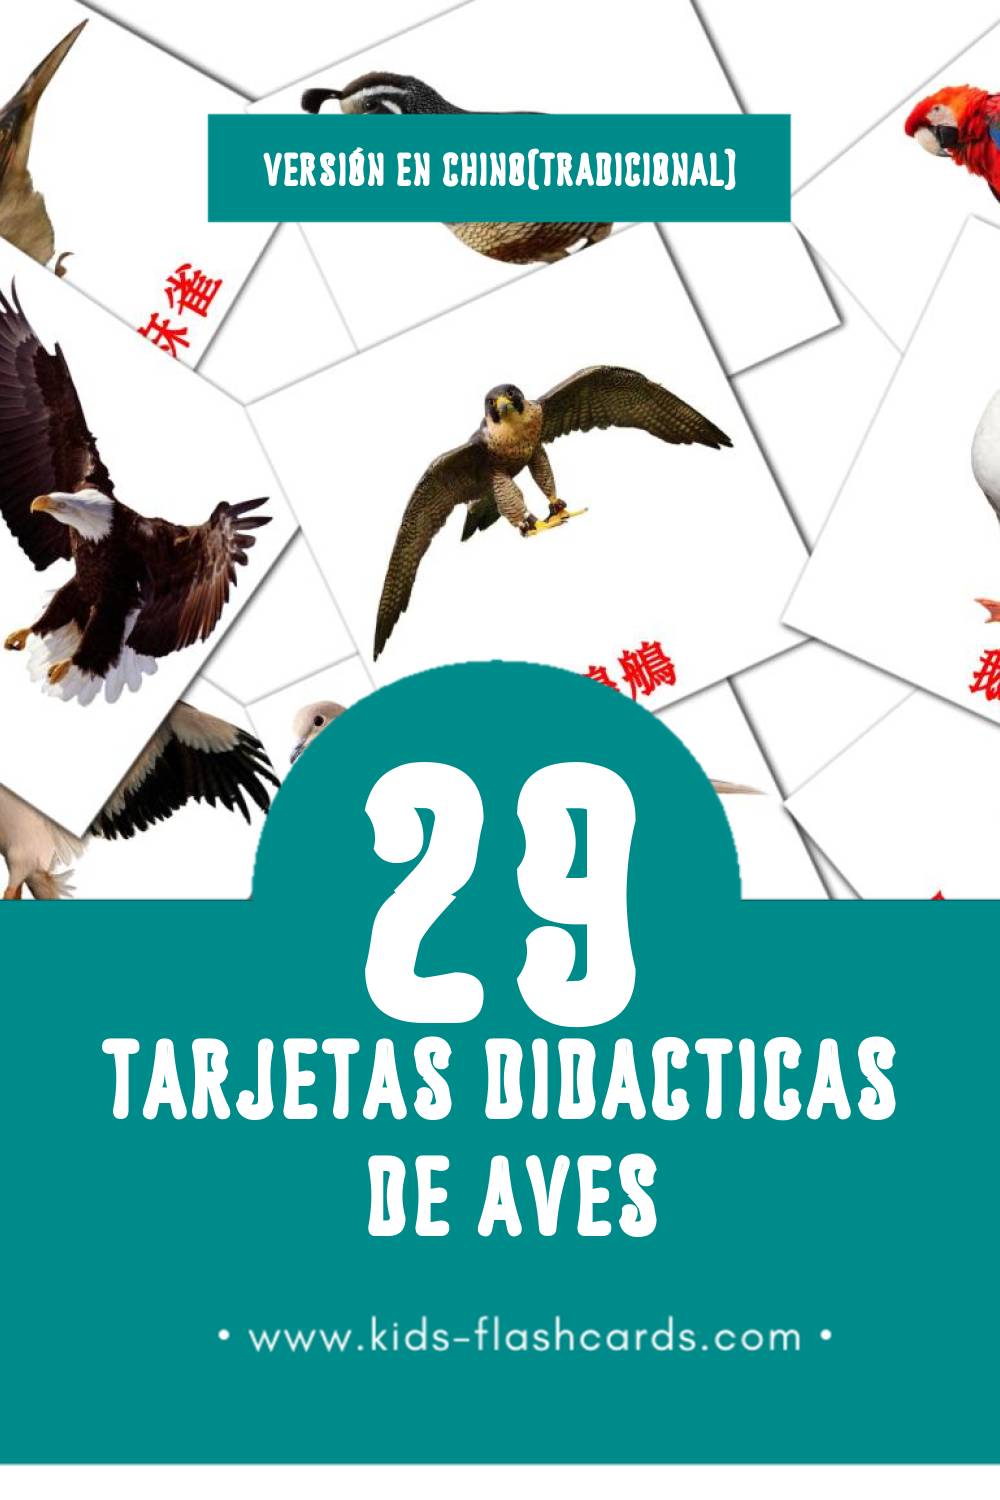 Tarjetas visuales de 鳥兒 para niños pequeños (29 tarjetas en Chino(tradicional))